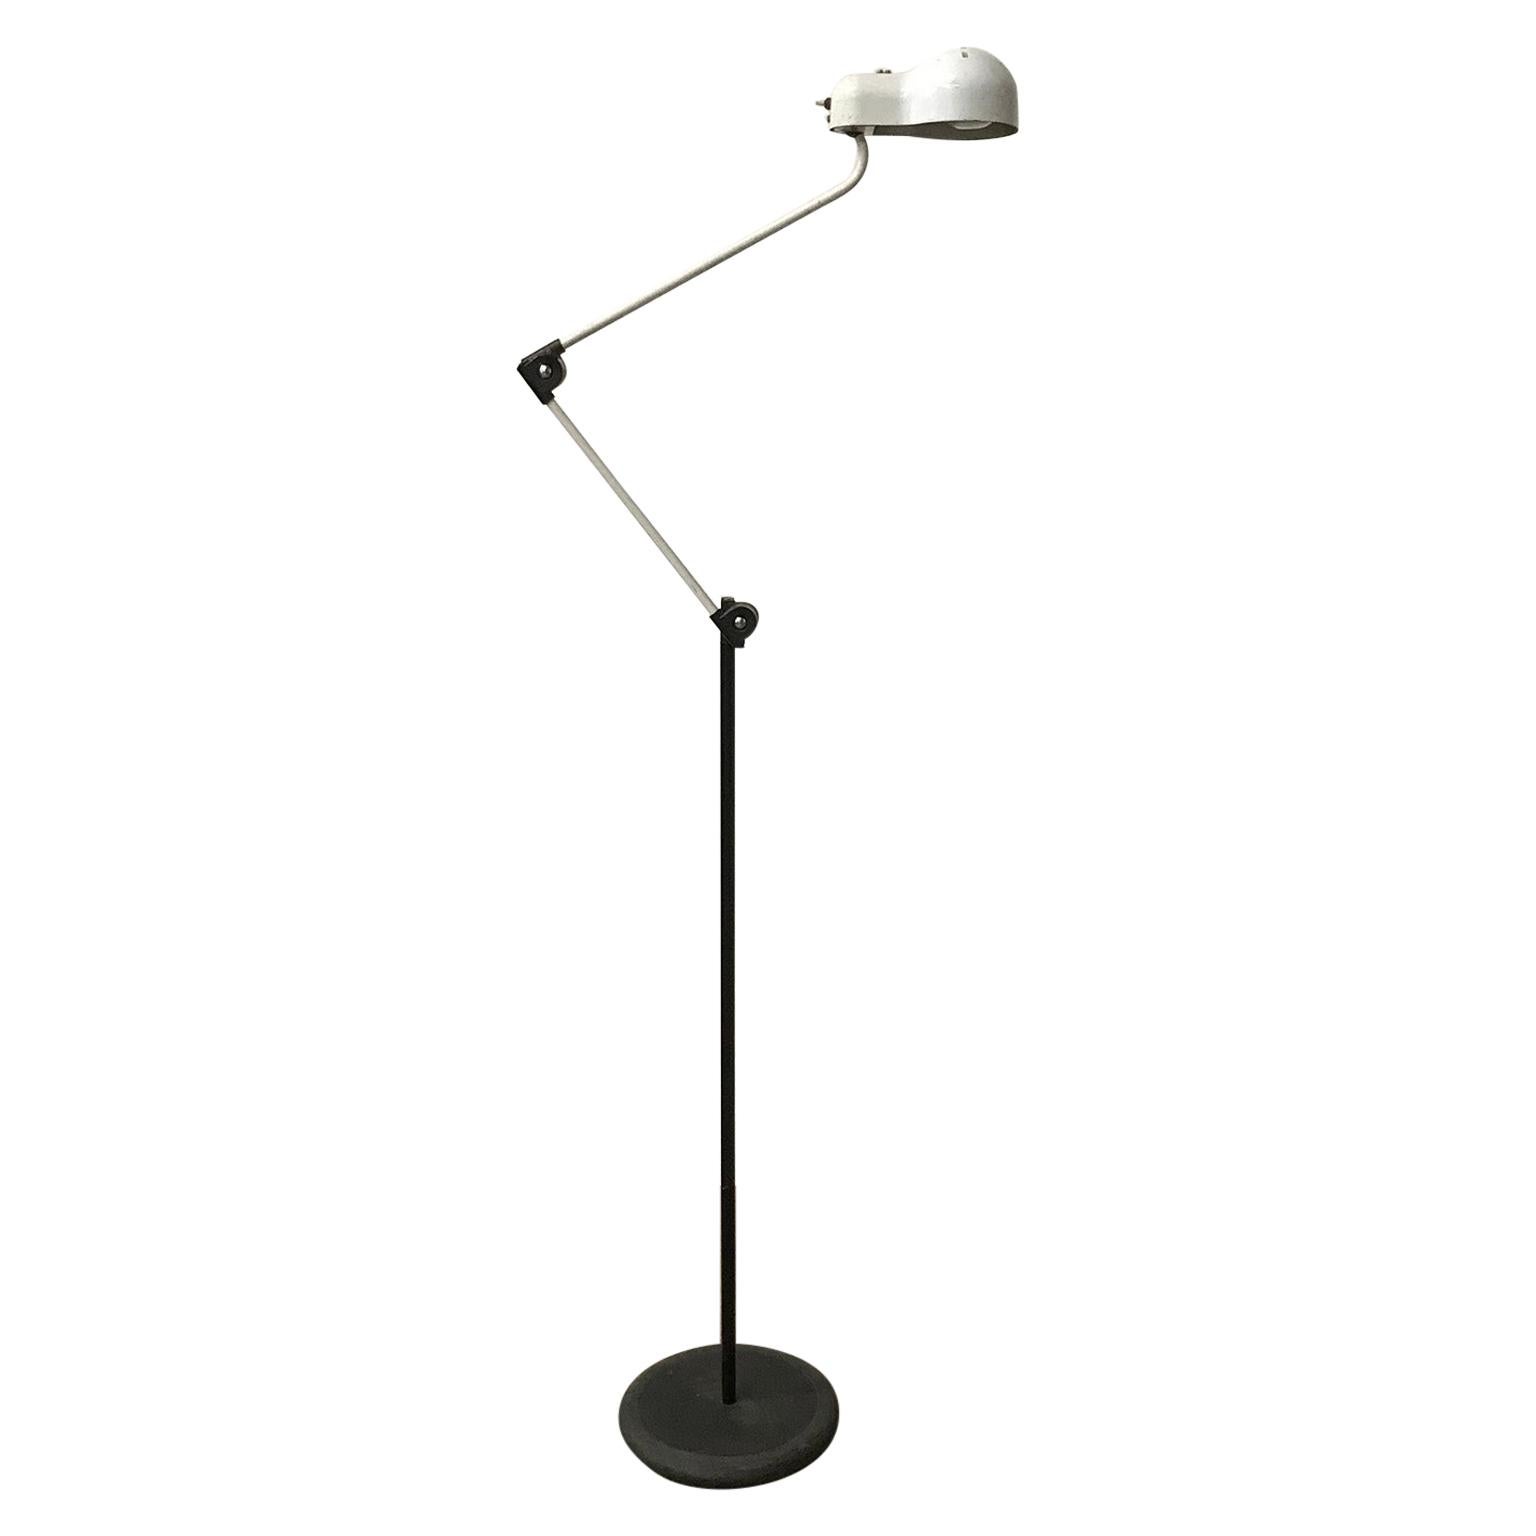 1960, Very Early Joe Colombo Topo Floor Lamp Designed for Stilnovo